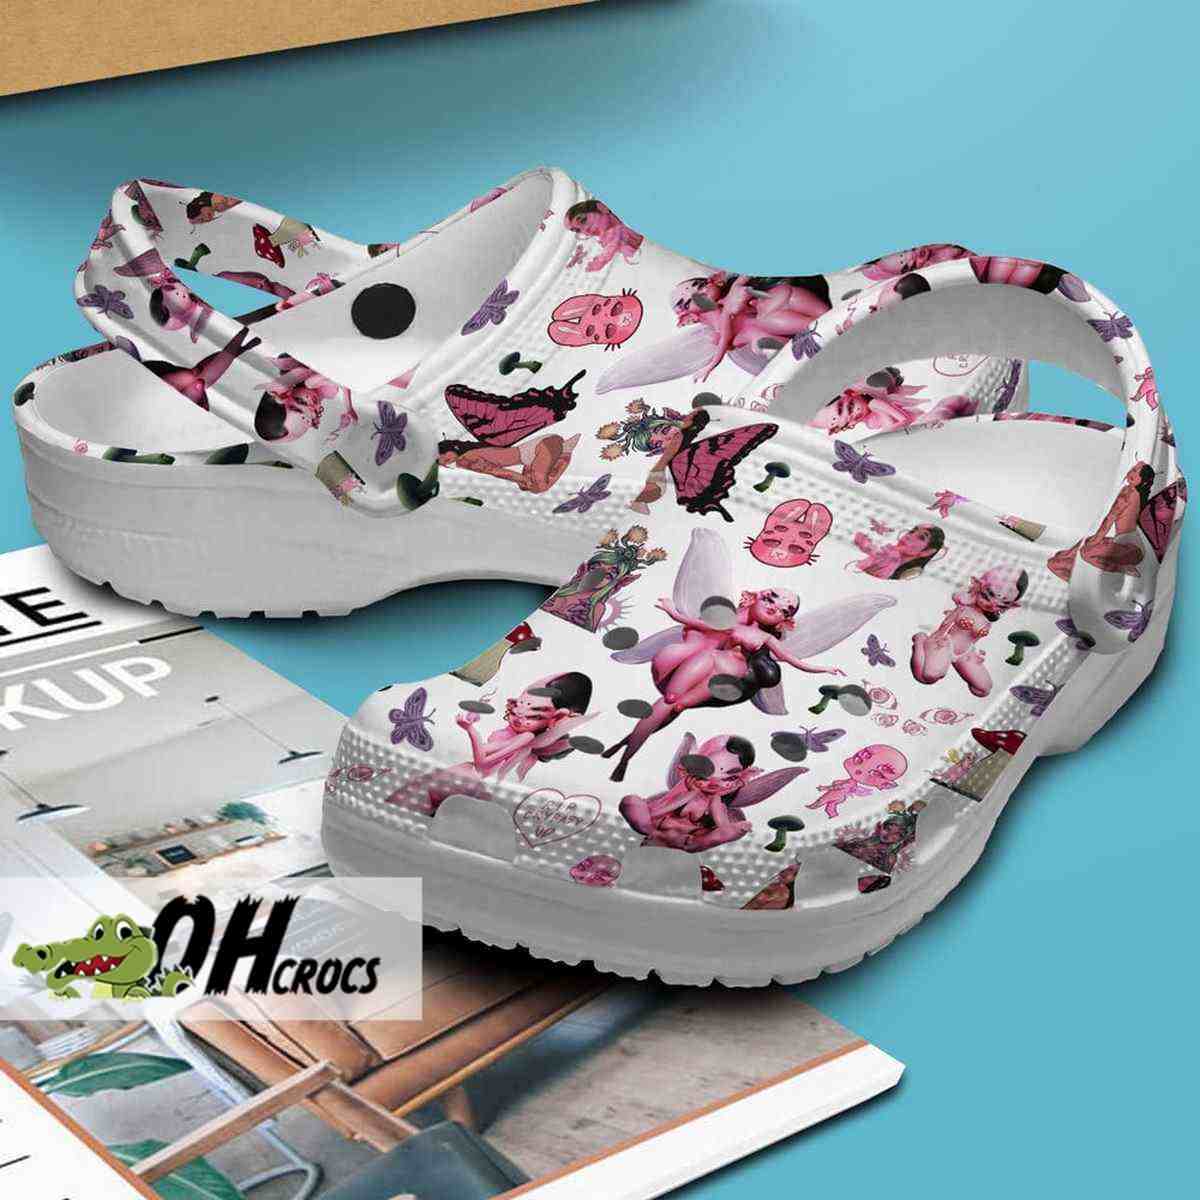 Melanie Martinez Pink Fairy Crocs Comfortable Clogs Shoes